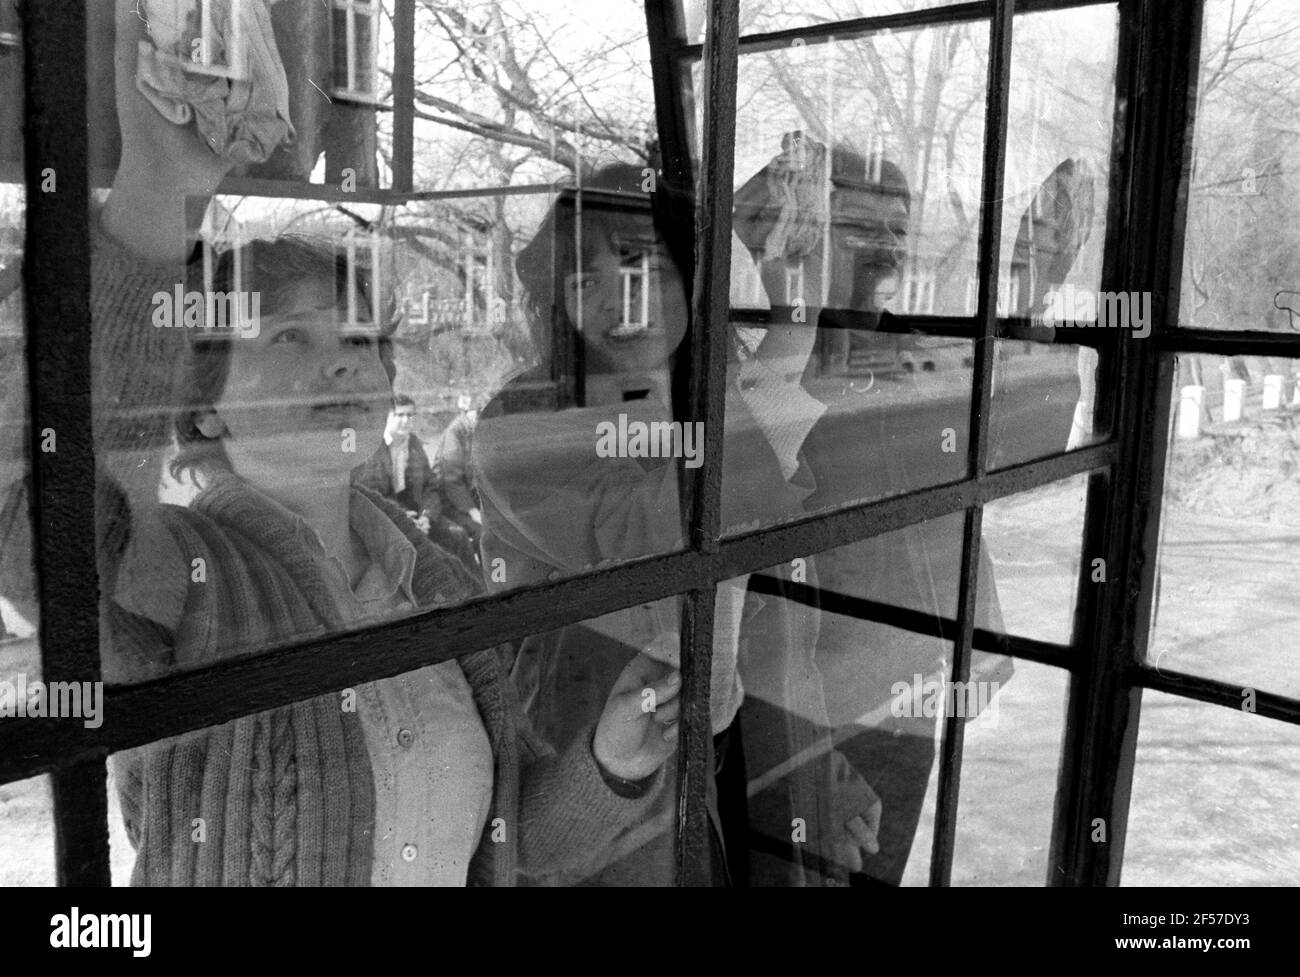 15 febbraio 1982, Sassonia, Delitzsch: Gli allievi di una scuola secondaria politecnica (POS) aiutano a pulire le finestre a Delitzsch nella primavera 1982. La data esatta della foto non è nota. Foto: Volkmar Heinz/dpa-Zentralbild/ZB Foto Stock